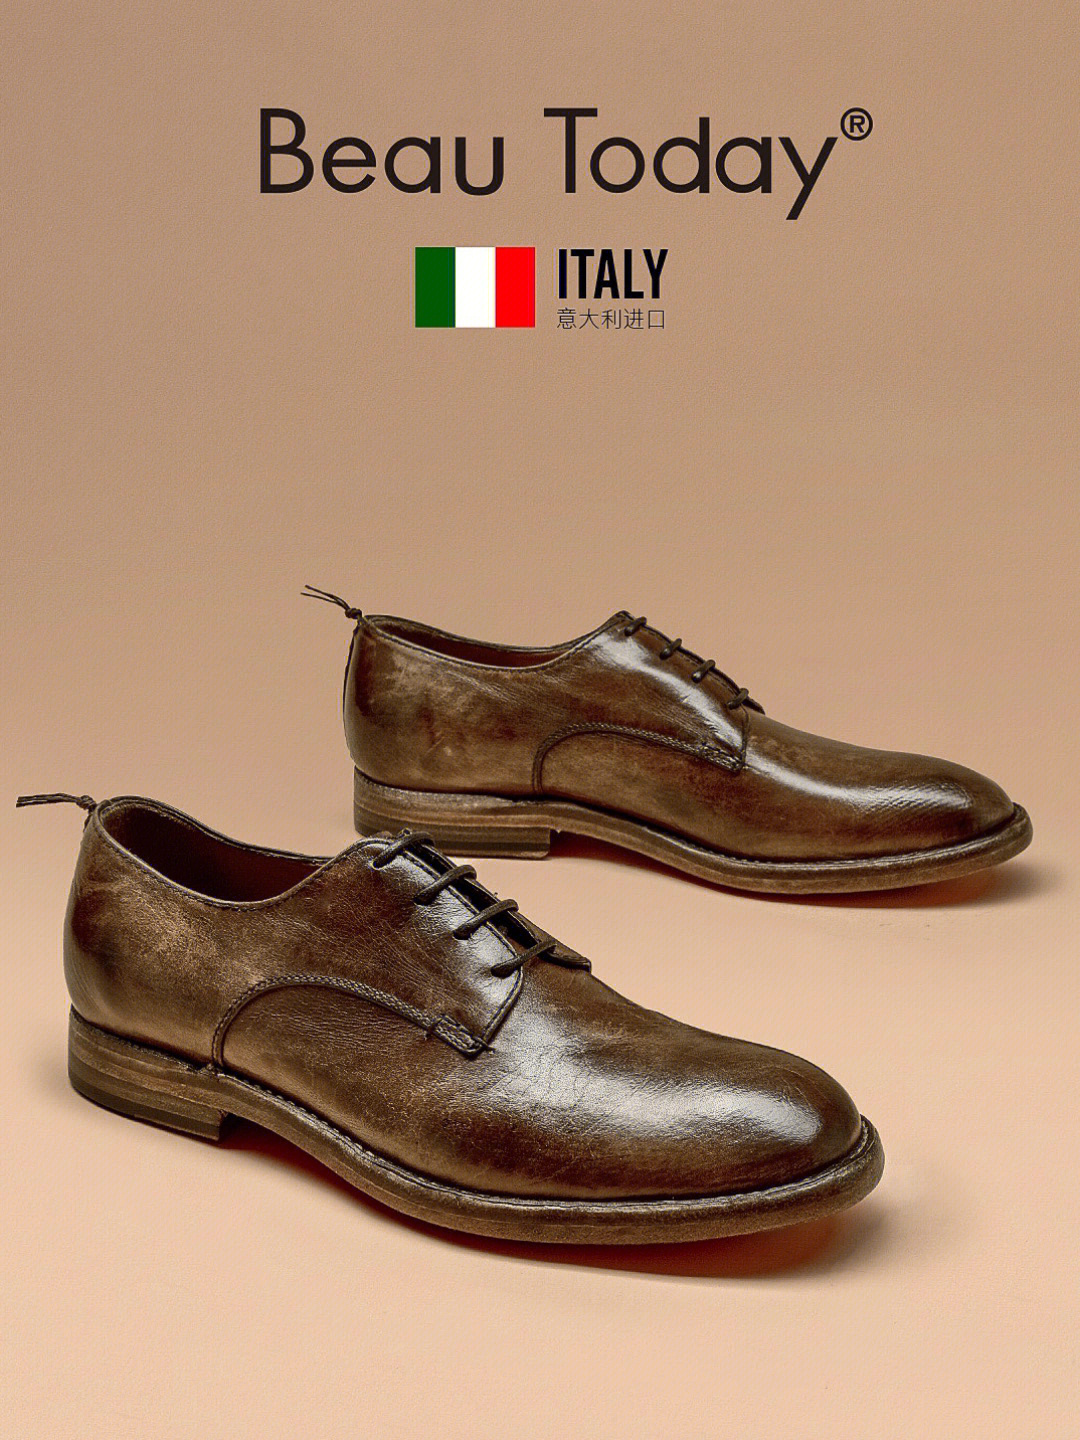 意大利袋鼠皮鞋图片